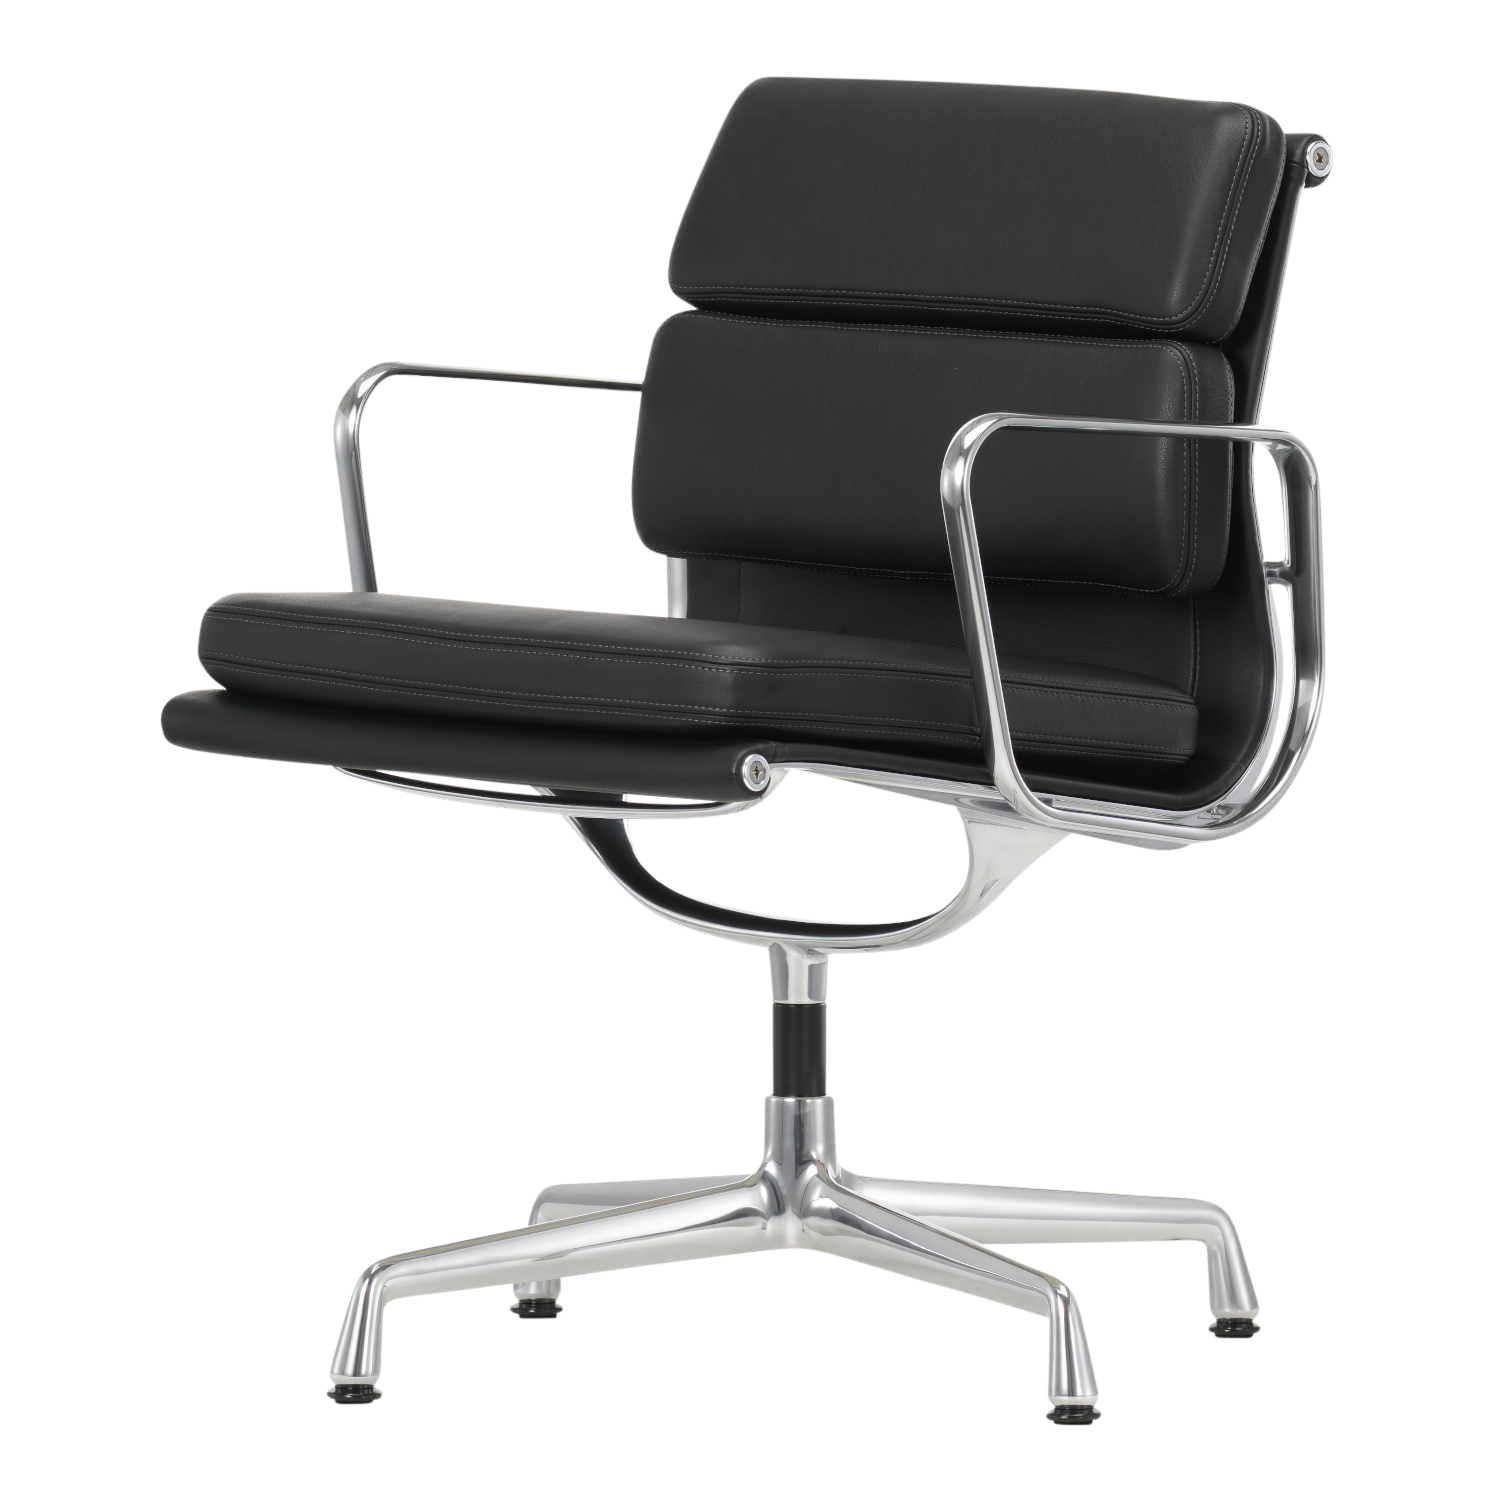 EA208 Soft Pad Chair Drehstuhl, Leder/Rückseite Plano 71/80 sand / coffee, Höhe 81 cm, Untergestell aluminium poliert, Gleiter filzgleiter für hart... von Vitra